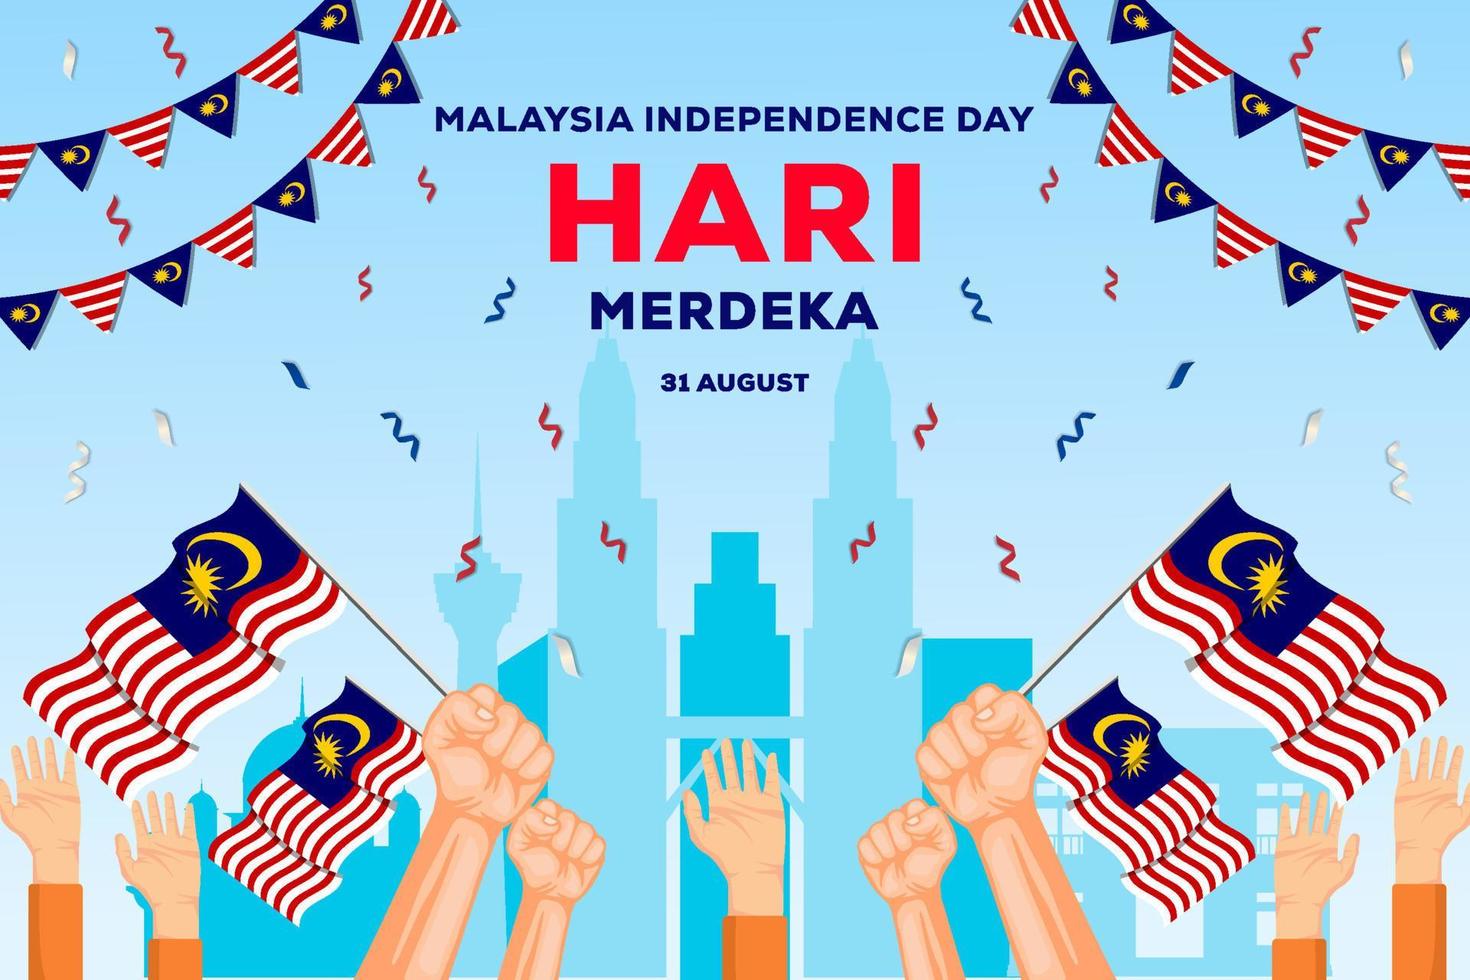 día de la independencia de malasia 31 de agosto ilustración de fondo con manos sosteniendo banderas de malasia vector